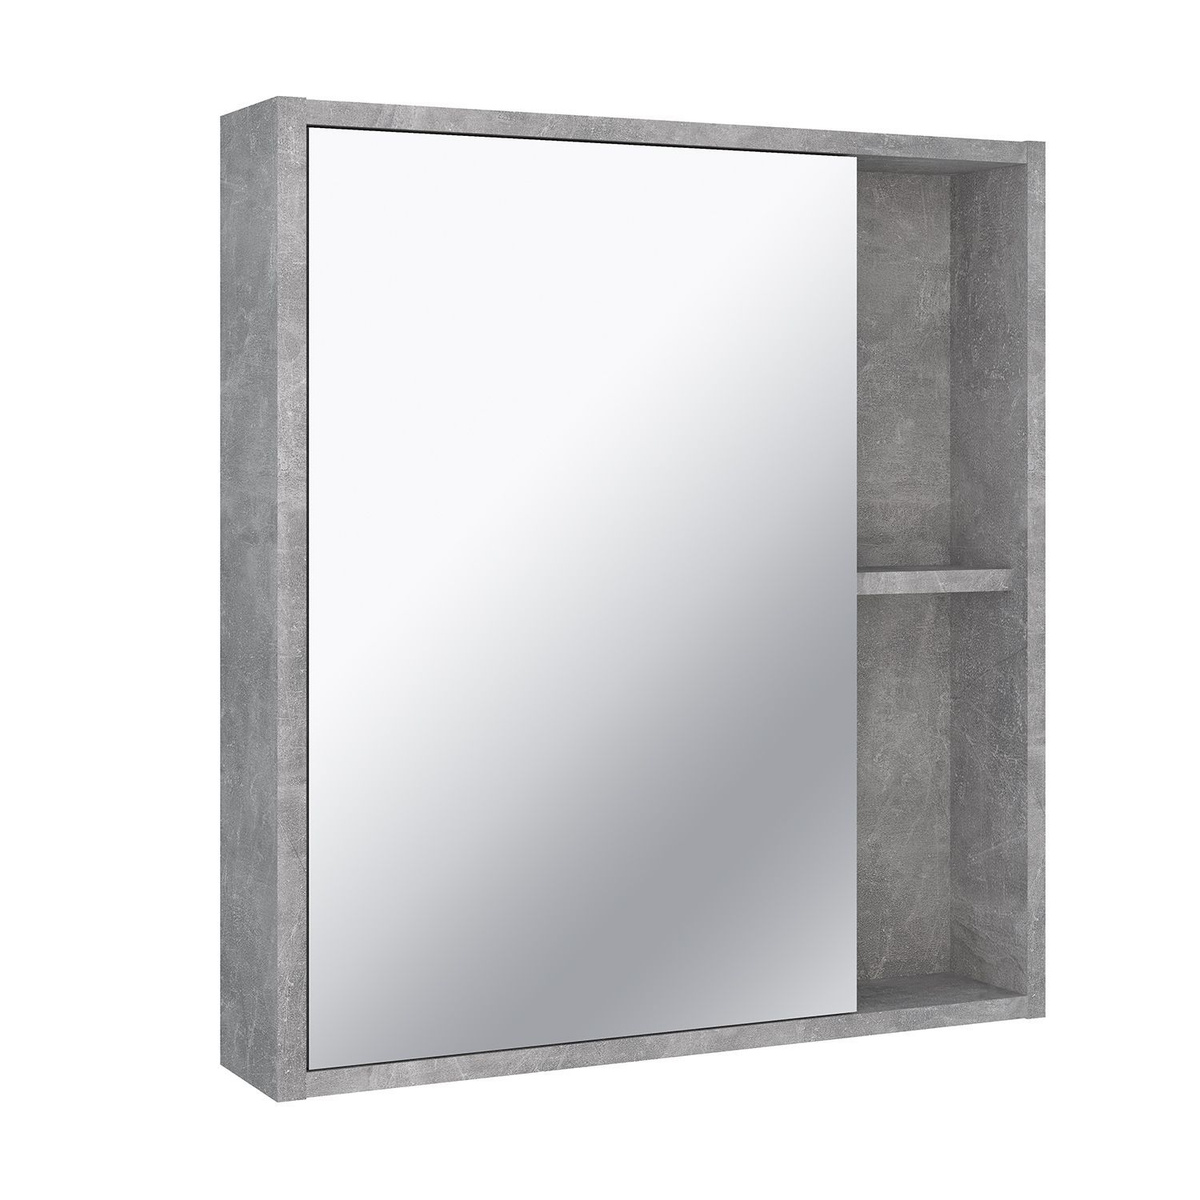 Зеркало шкаф для ванной, Runo, Эко 60, серый бетон, универсальный, полка для ванной